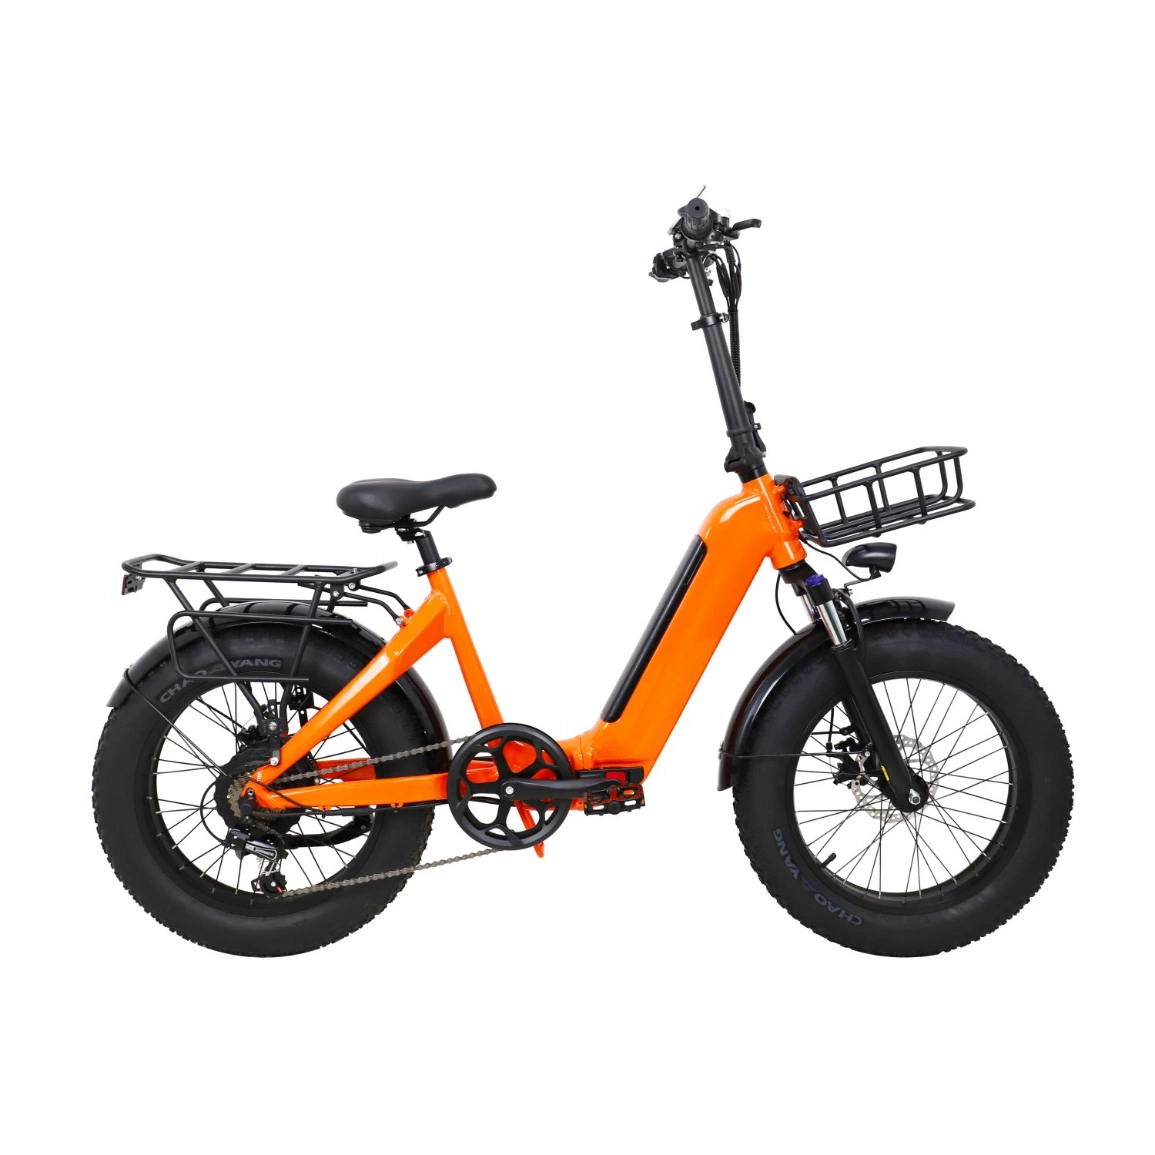 2023 New Road Bike Crianças Electric Dirt Bike City cargo Bicicletas eléctricas para crianças